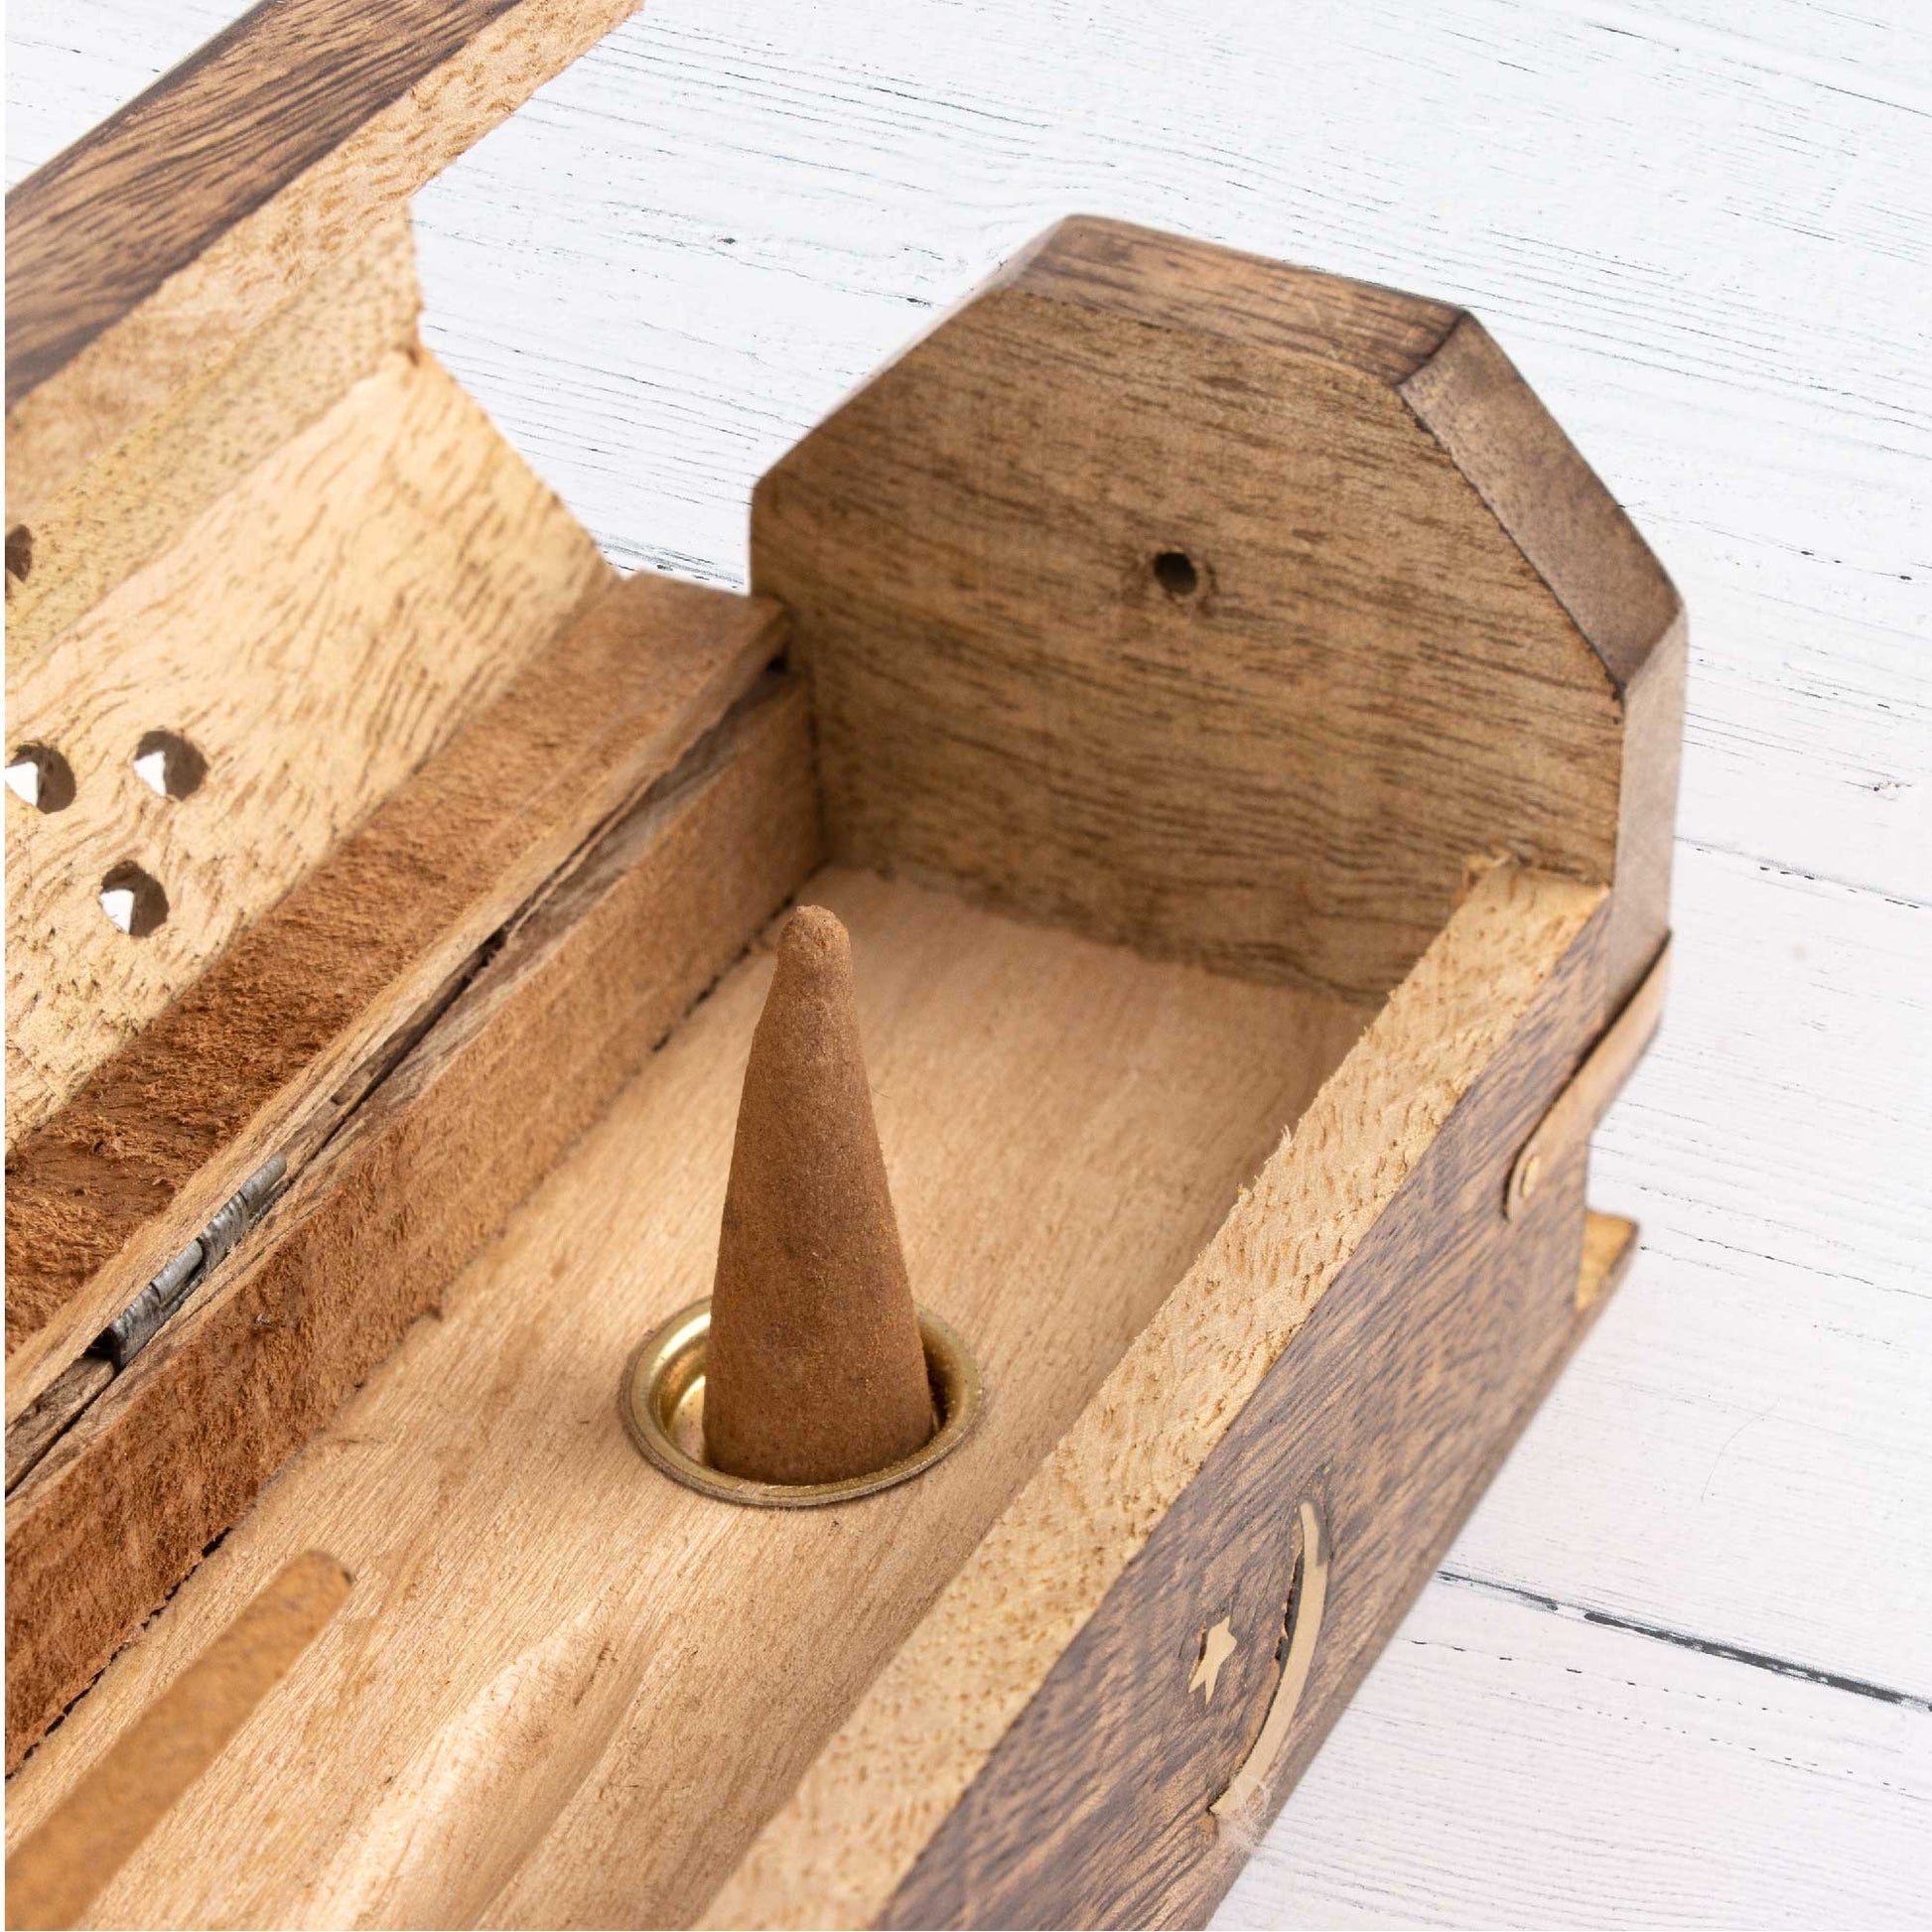 Incense Wooden Storage Box